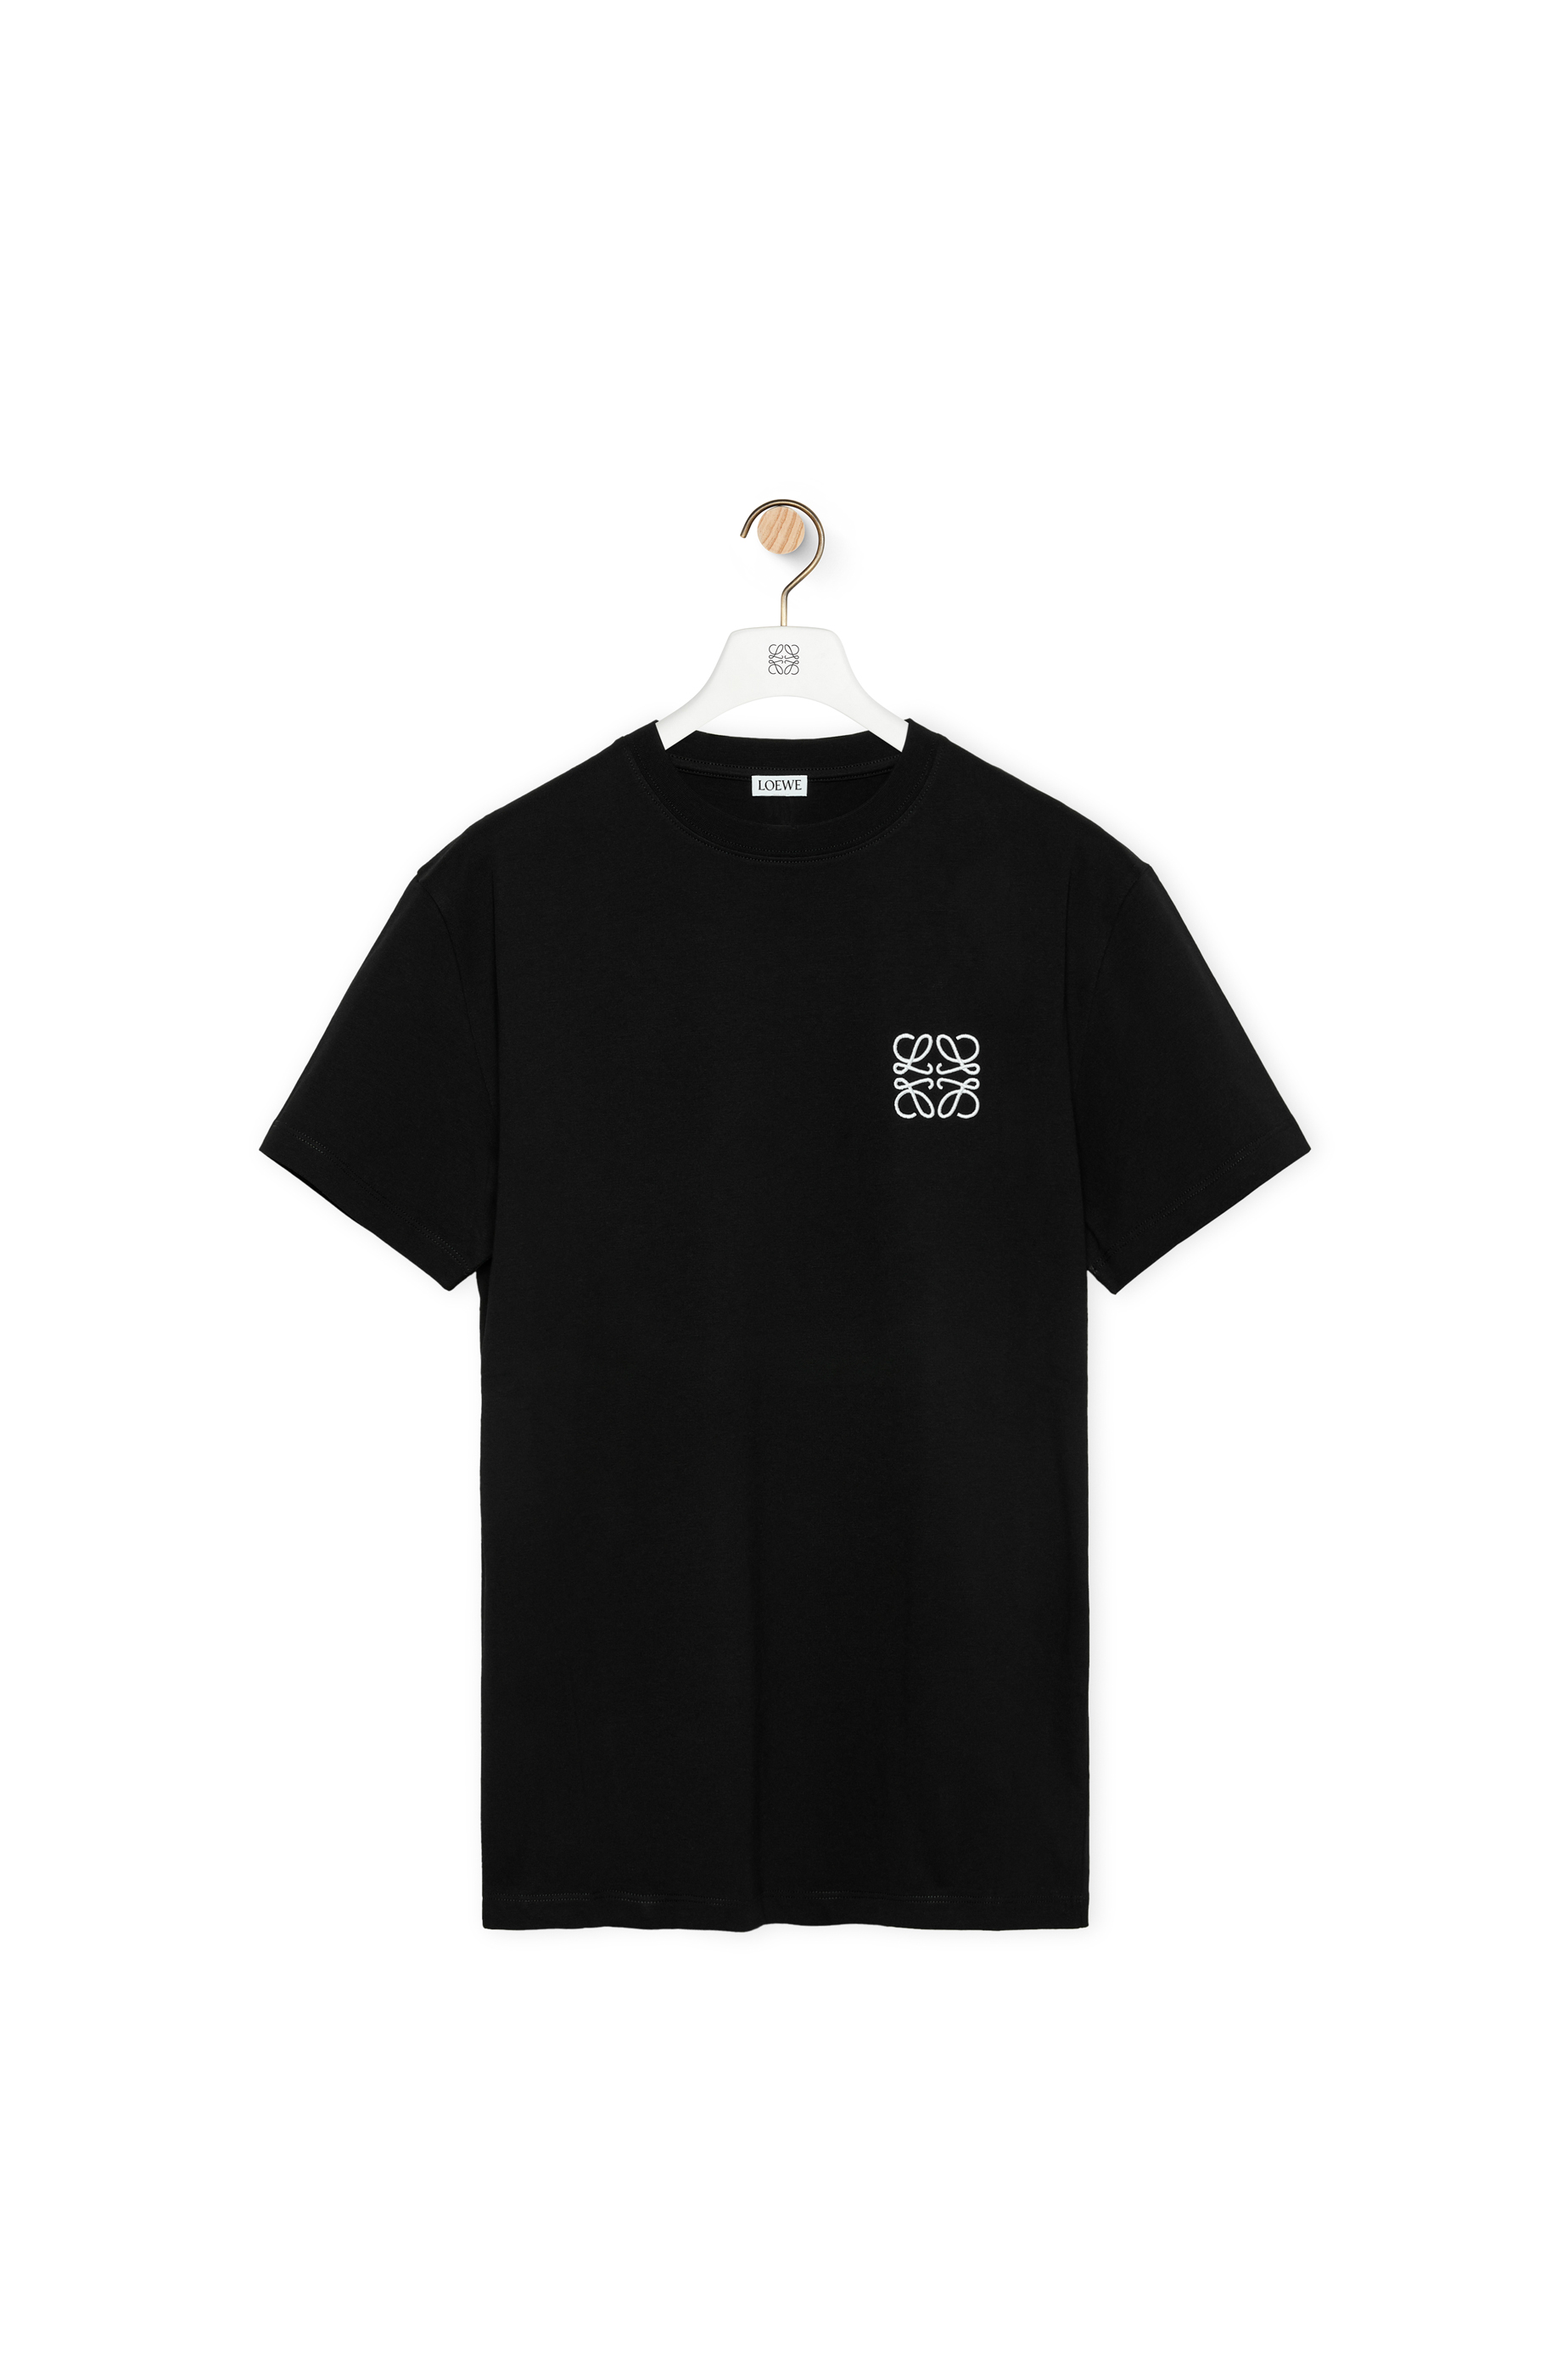 アナグラム Tシャツ (コットン) ブラック - LOEWE